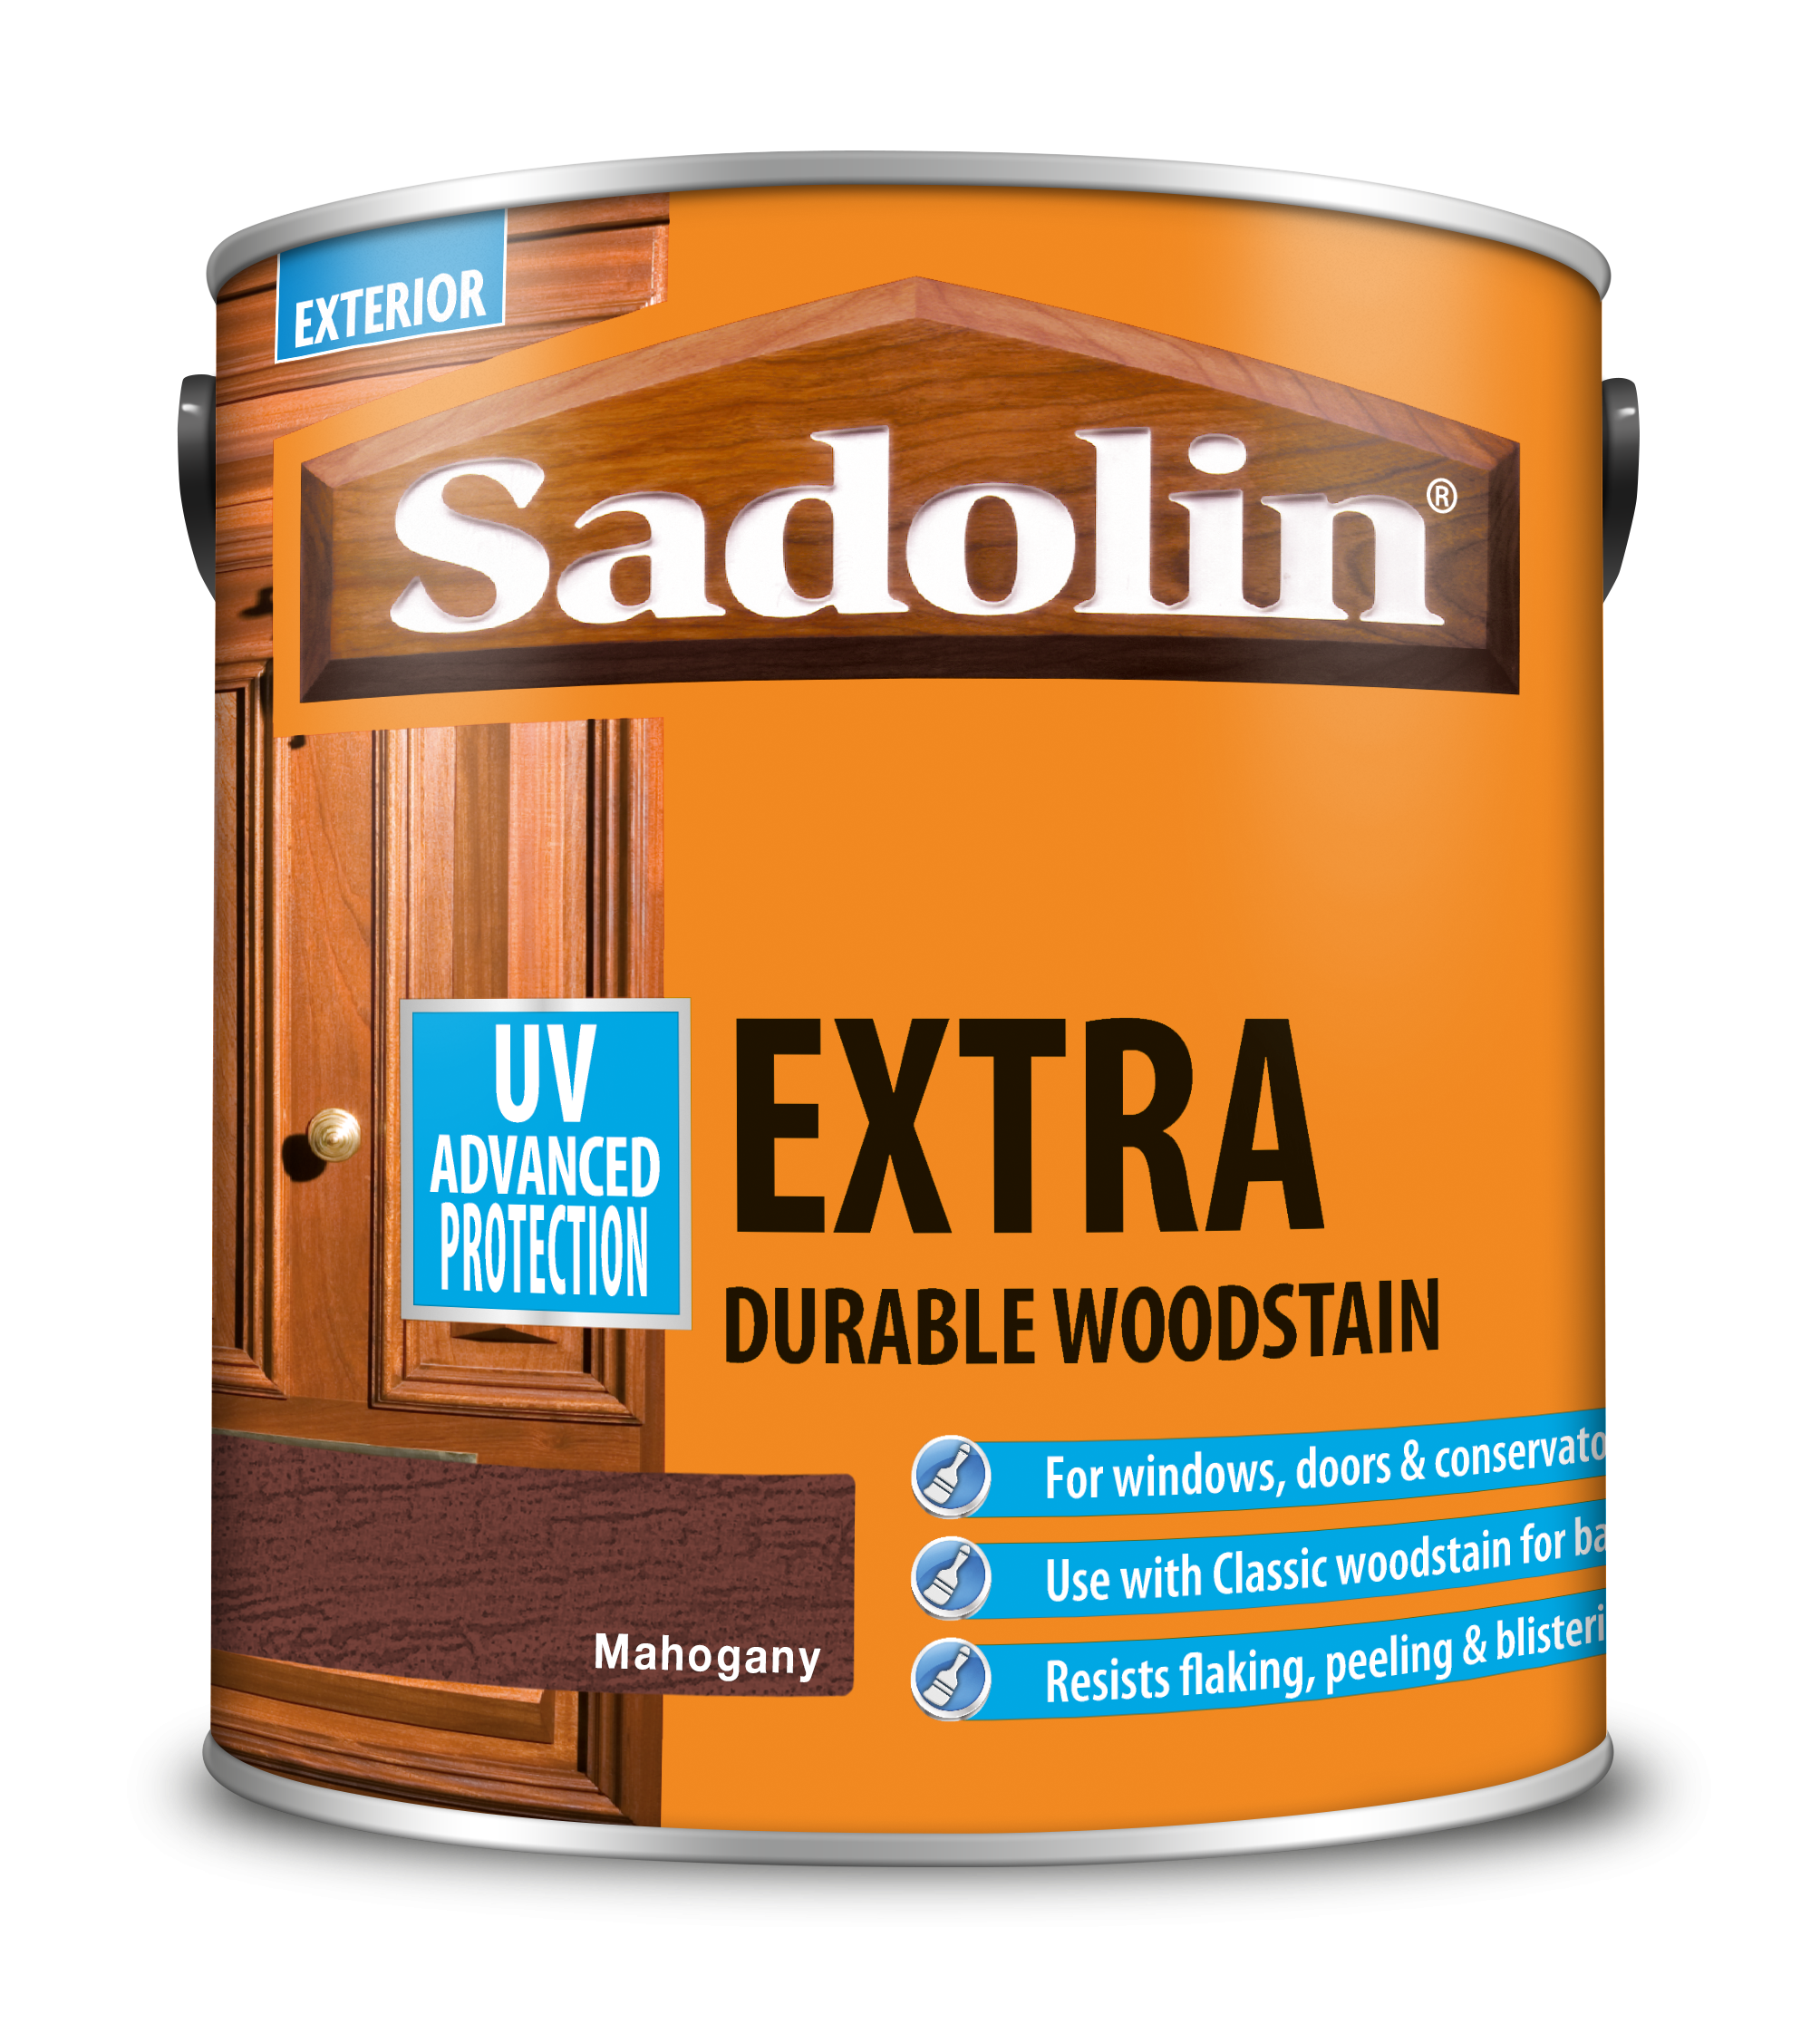 Sadolin Extra Durable Woodstain Mahogany 2.5L [MPPSSVK]  5028567